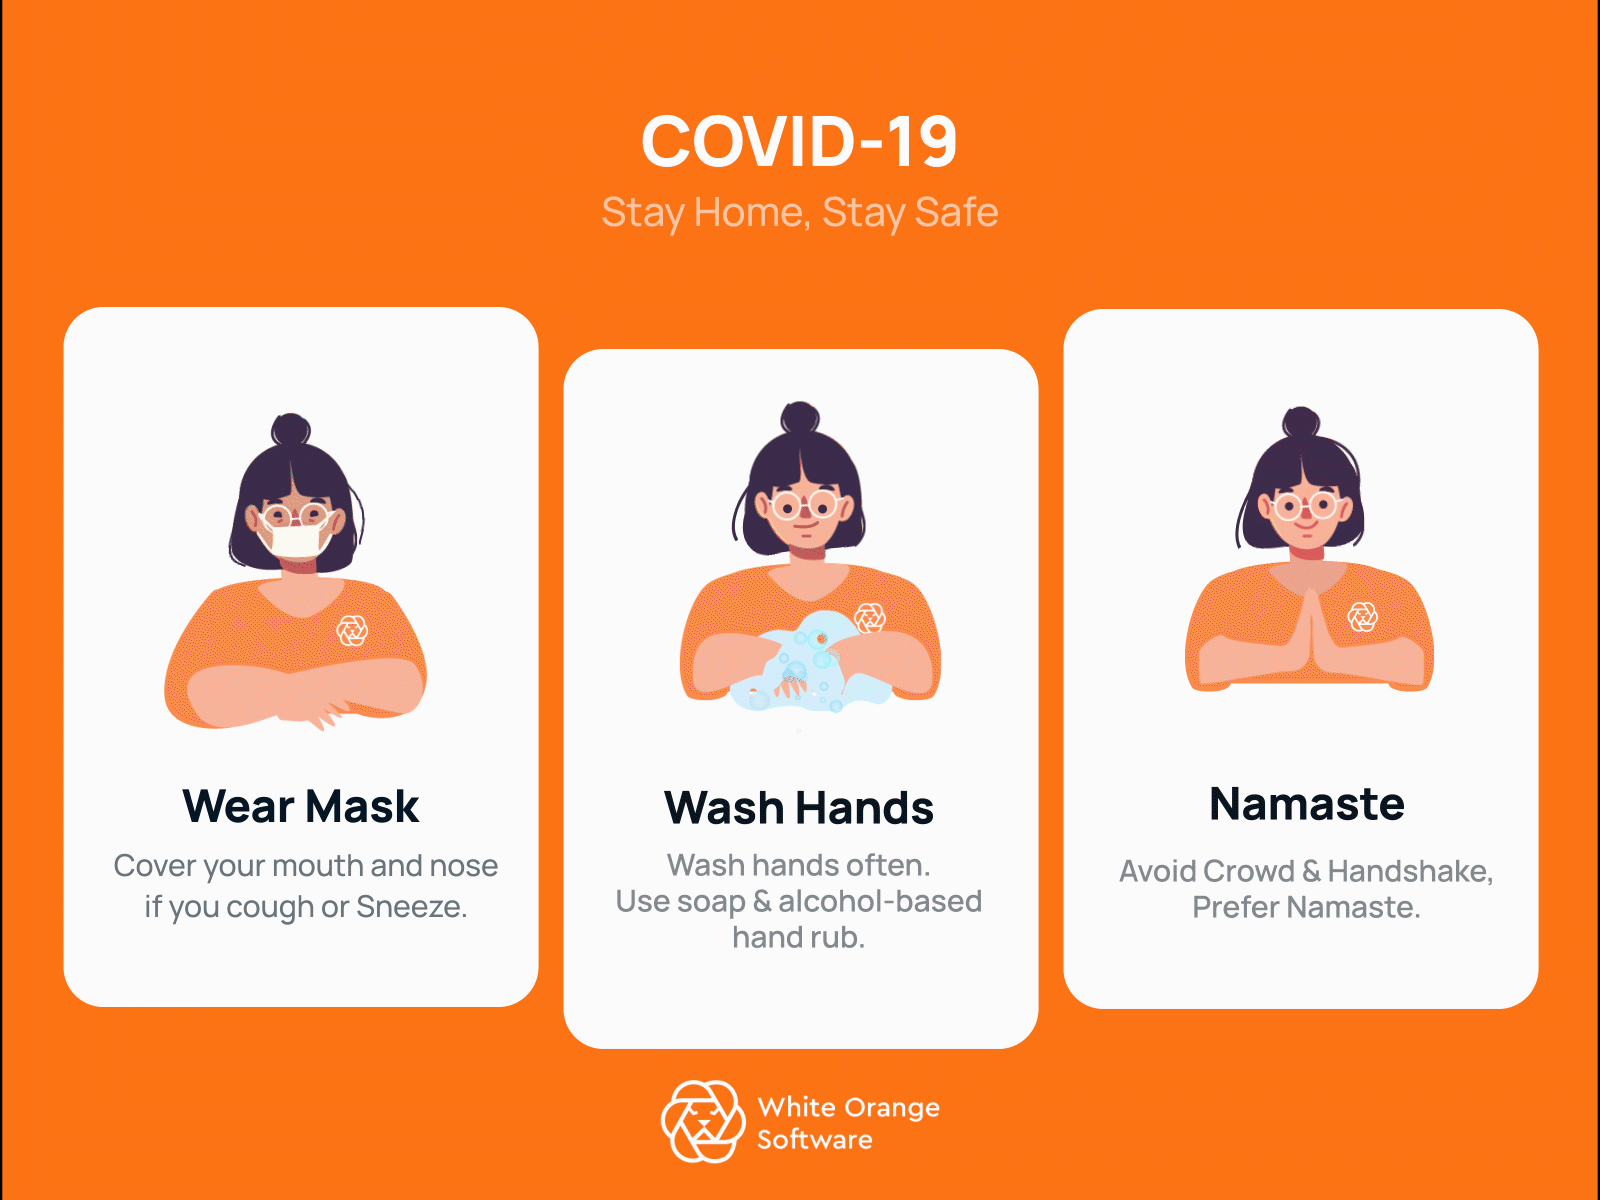 COVID-19 awareness campaign coronavirus covid19 gif health prepare safety